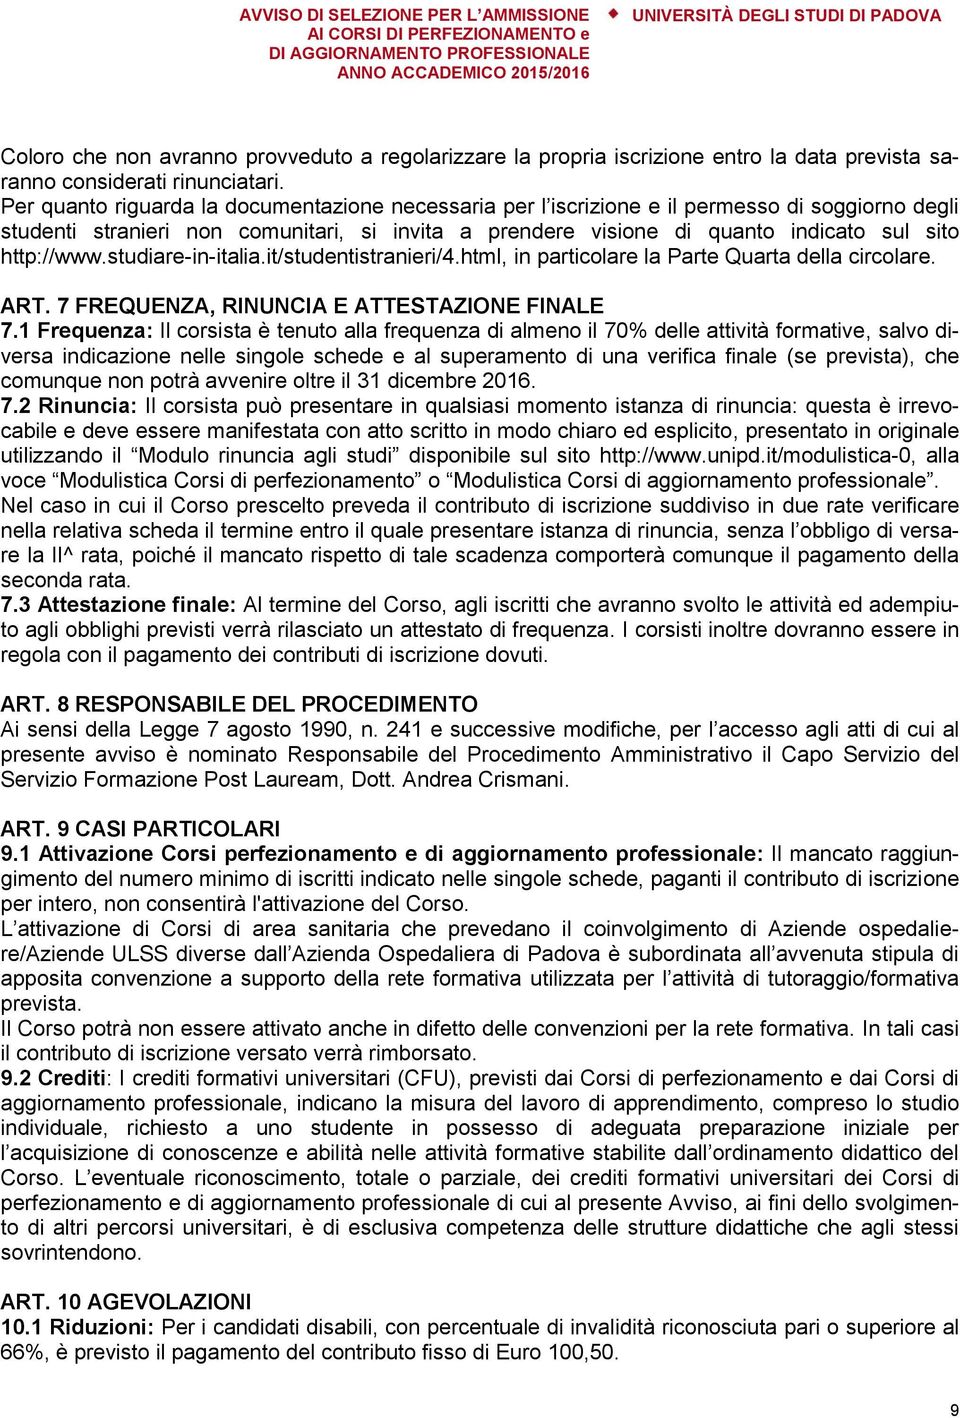 http://www.studiare-in-italia.it/studentistranieri/4.html, in particolare la Parte Quarta della circolare. ART. 7 FREQUENZA, RINUNCIA E ATTESTAZIONE FINALE 7.